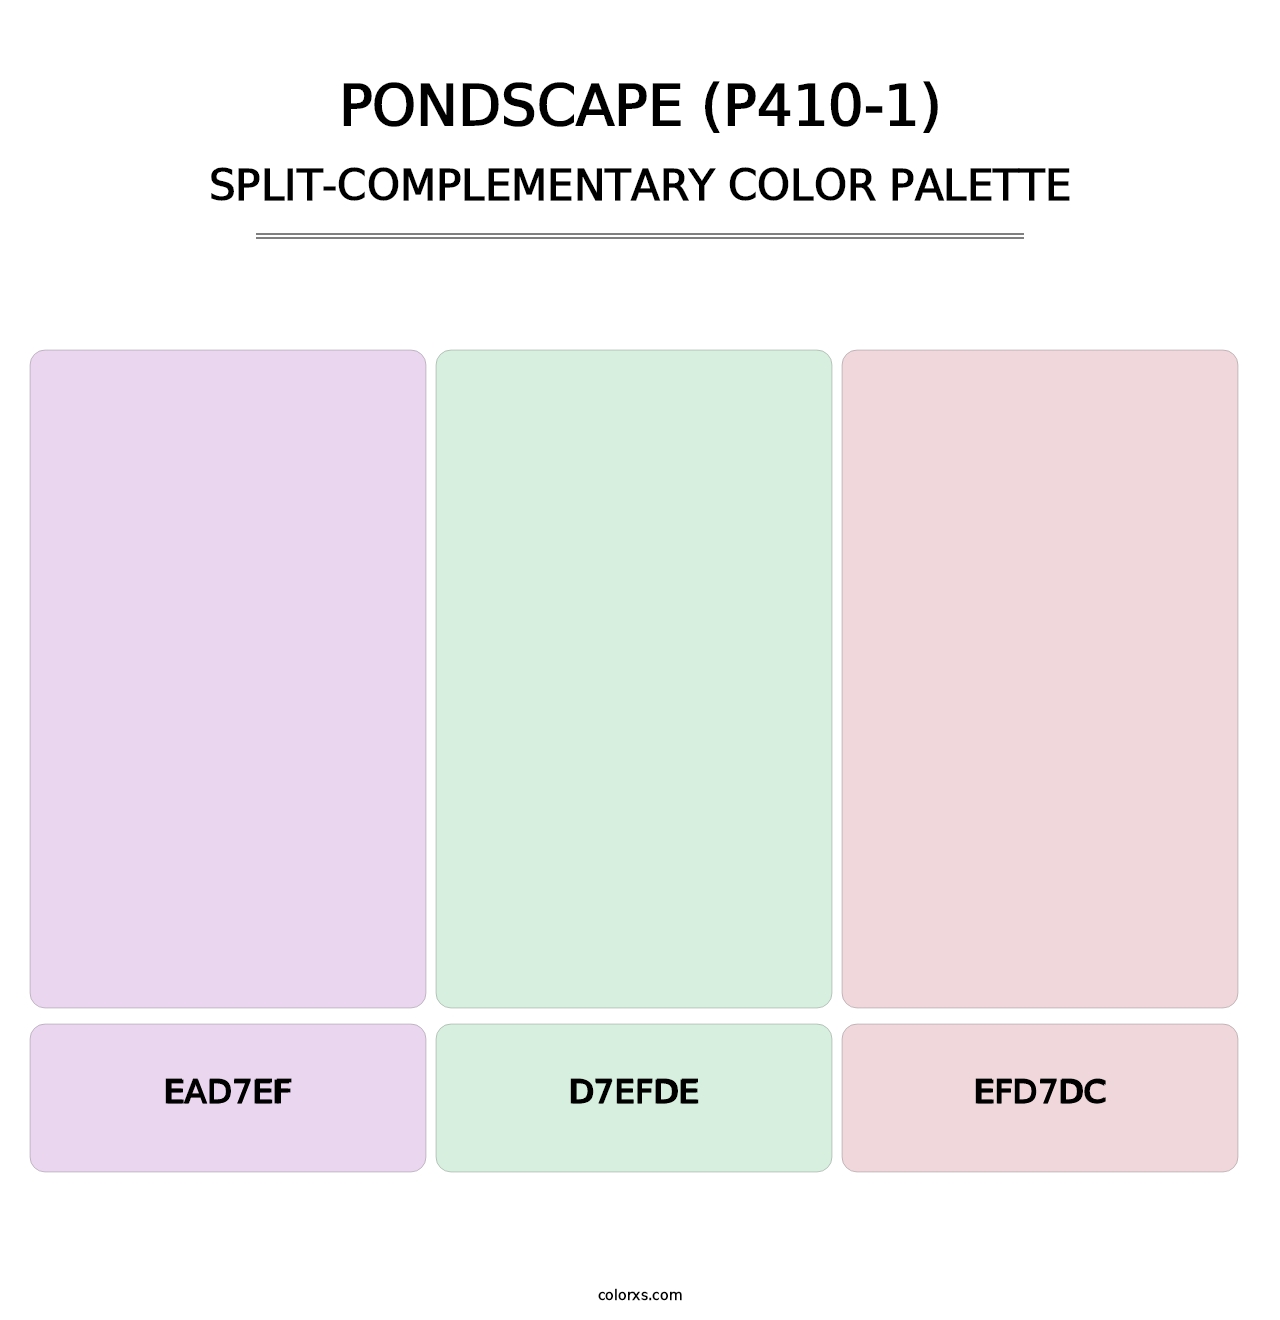 Pondscape (P410-1) - Split-Complementary Color Palette